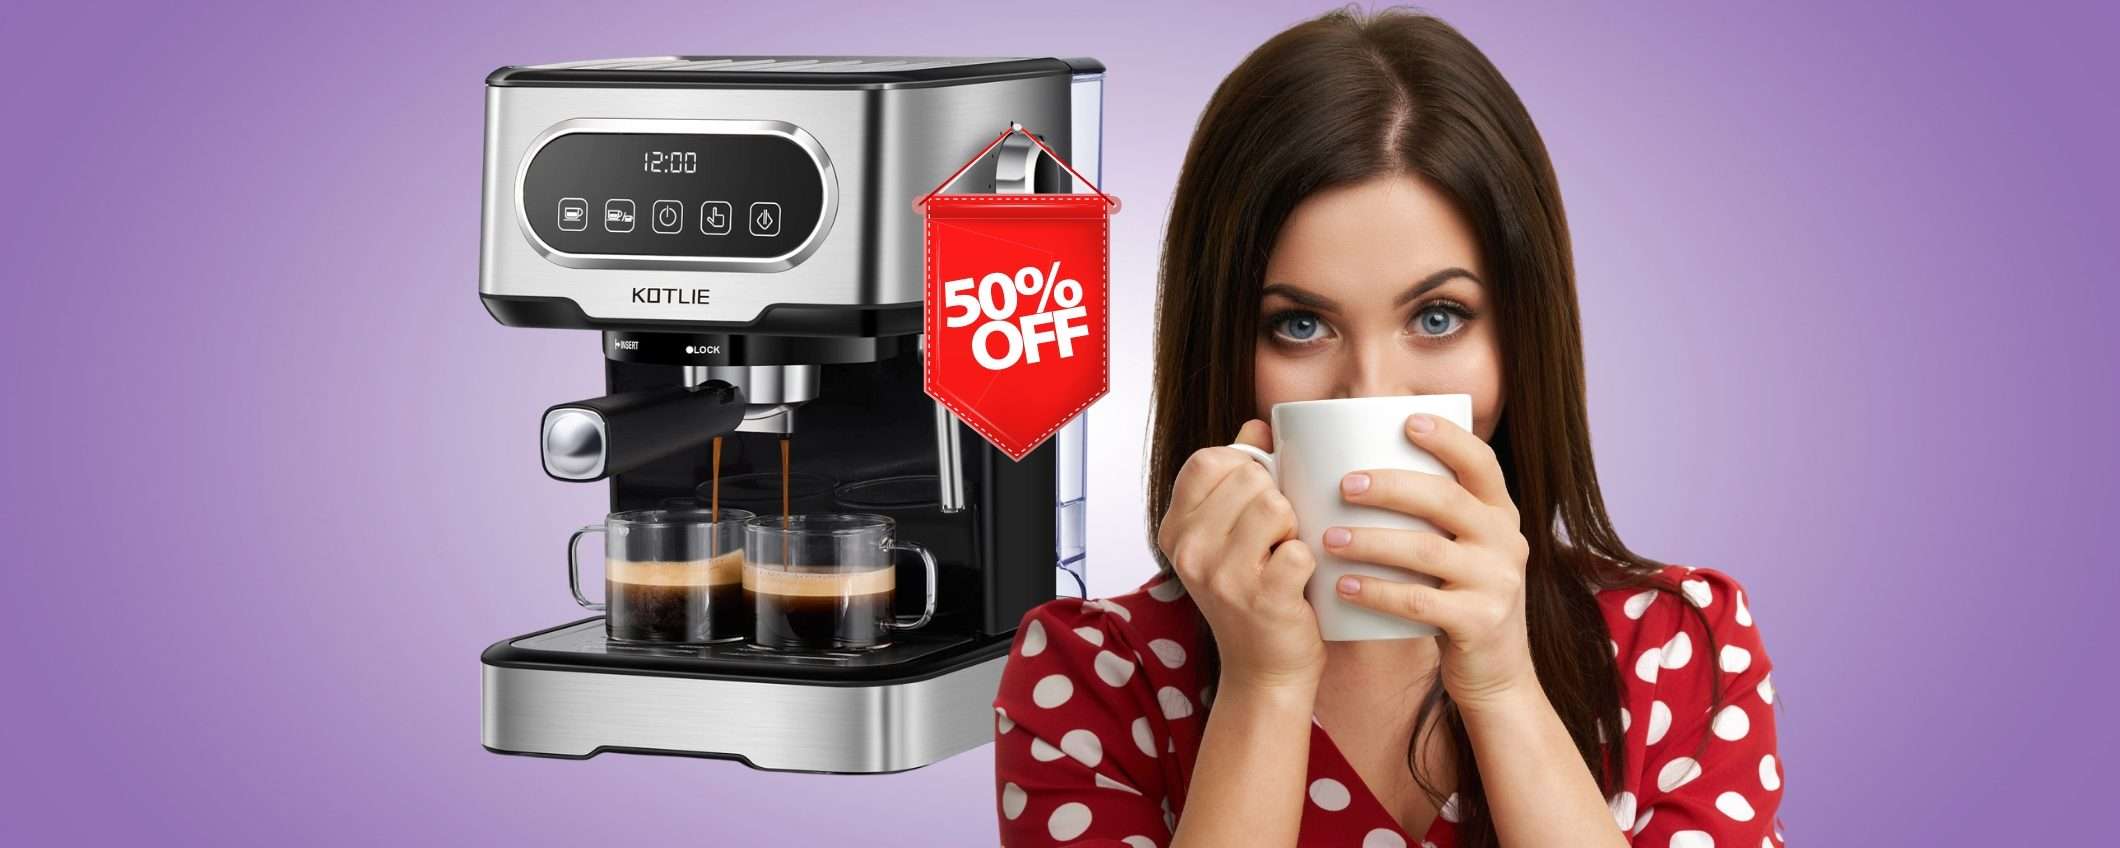 Caffè espresso e cappuccino COME al BAR con questa macchinetta al 50%